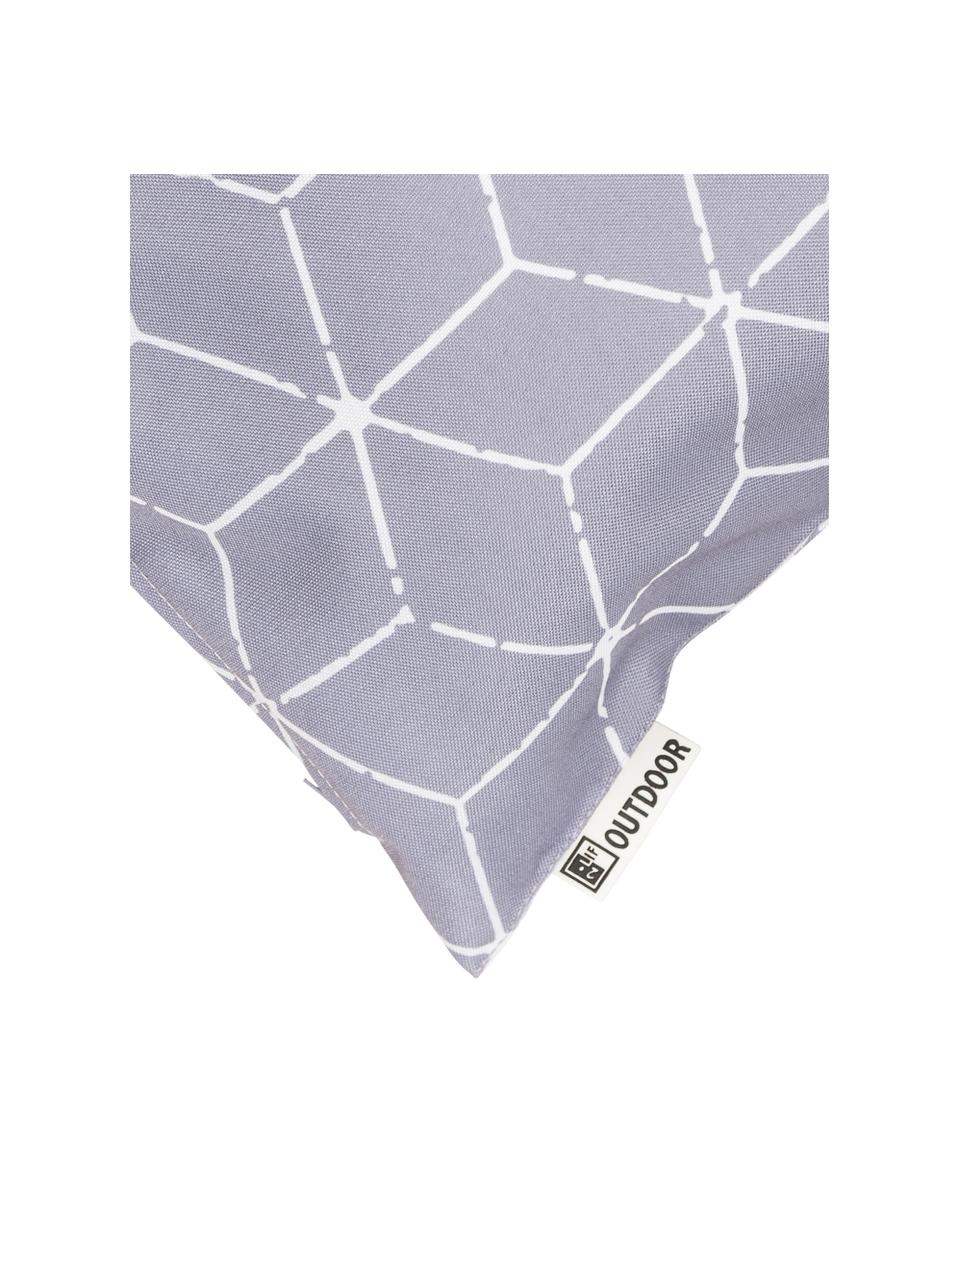 Outdoor kussen Cube met grafisch patroon in grijs/wit, met vulling, 100% polyester, Grijs, wit, 30 x 50 cm